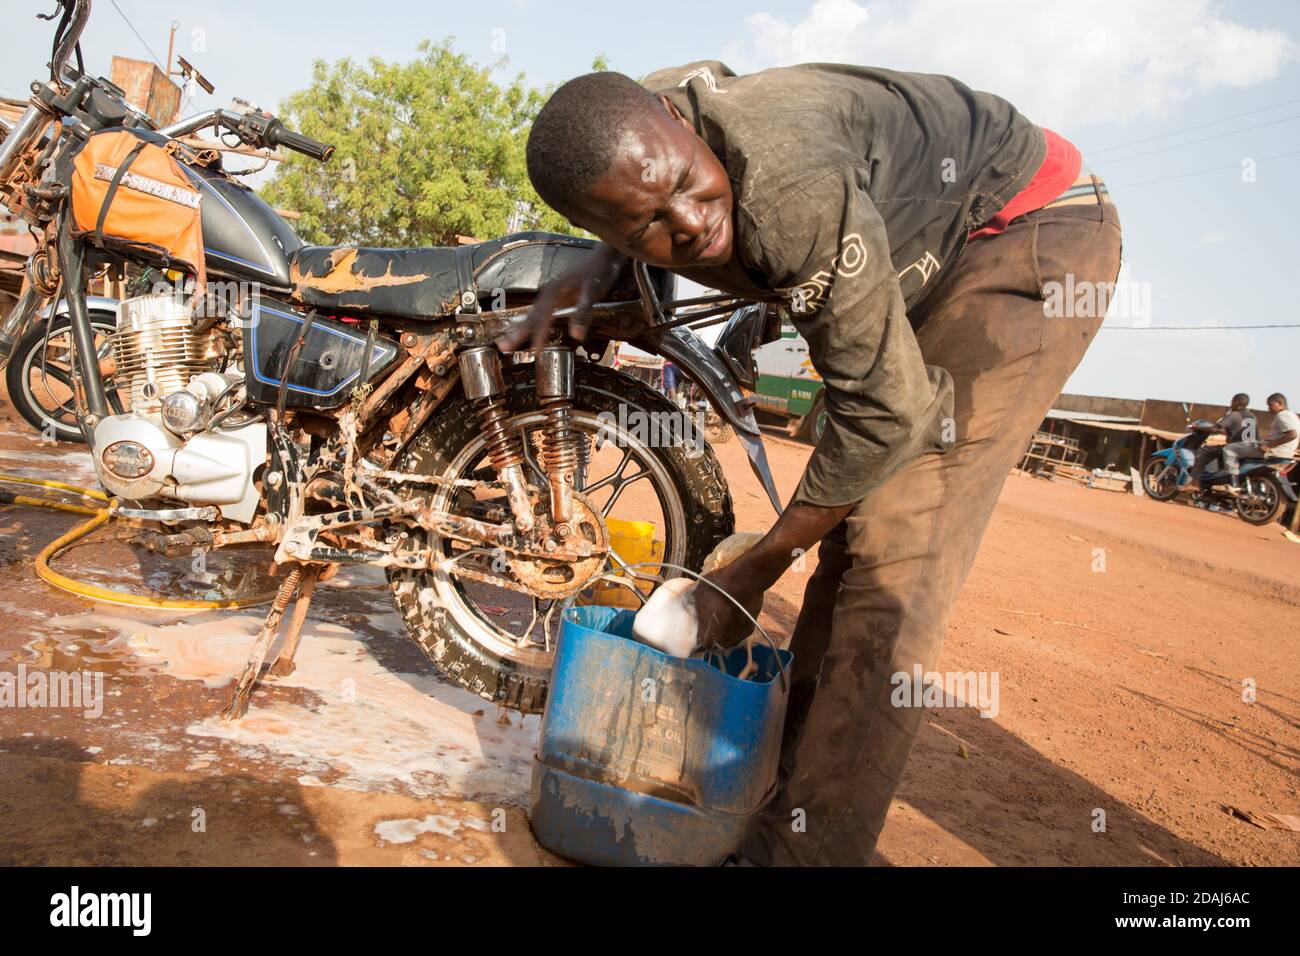 Selingue, Mali, le 25 avril 2015; Tiema Tounkara, 14 ans, et Afon Troure, 19 ans, qui nettoient les motos, travaillent tous deux pour leur père. Tiema va à l'école, et travaille dans l'après-midi. Afon a quitté l'école l'année dernière. Ils facturent 250 CFA pour nettoyer chaque vélo, et nettoyer environ 15 vélos chaque jour entre eux. Banque D'Images